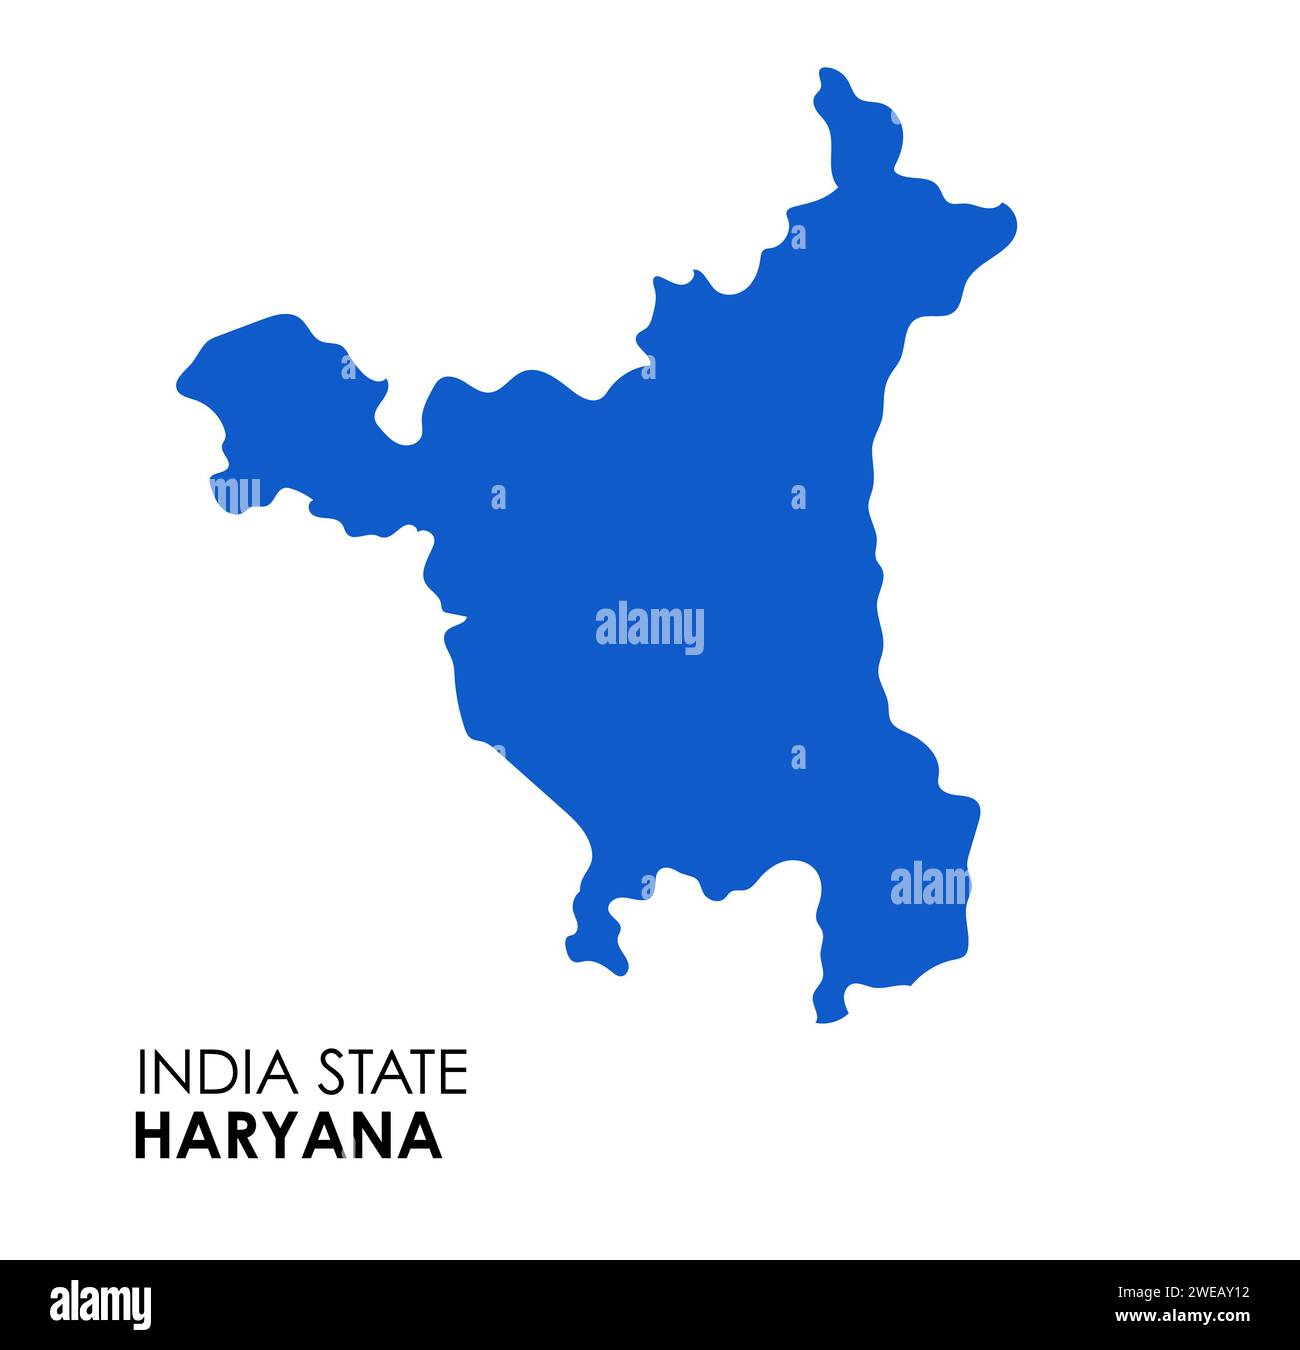 Carte Haryana de l'état indien. Illustration vectorielle de carte Haryana. Carte Haryana sur fond blanc. Banque D'Images